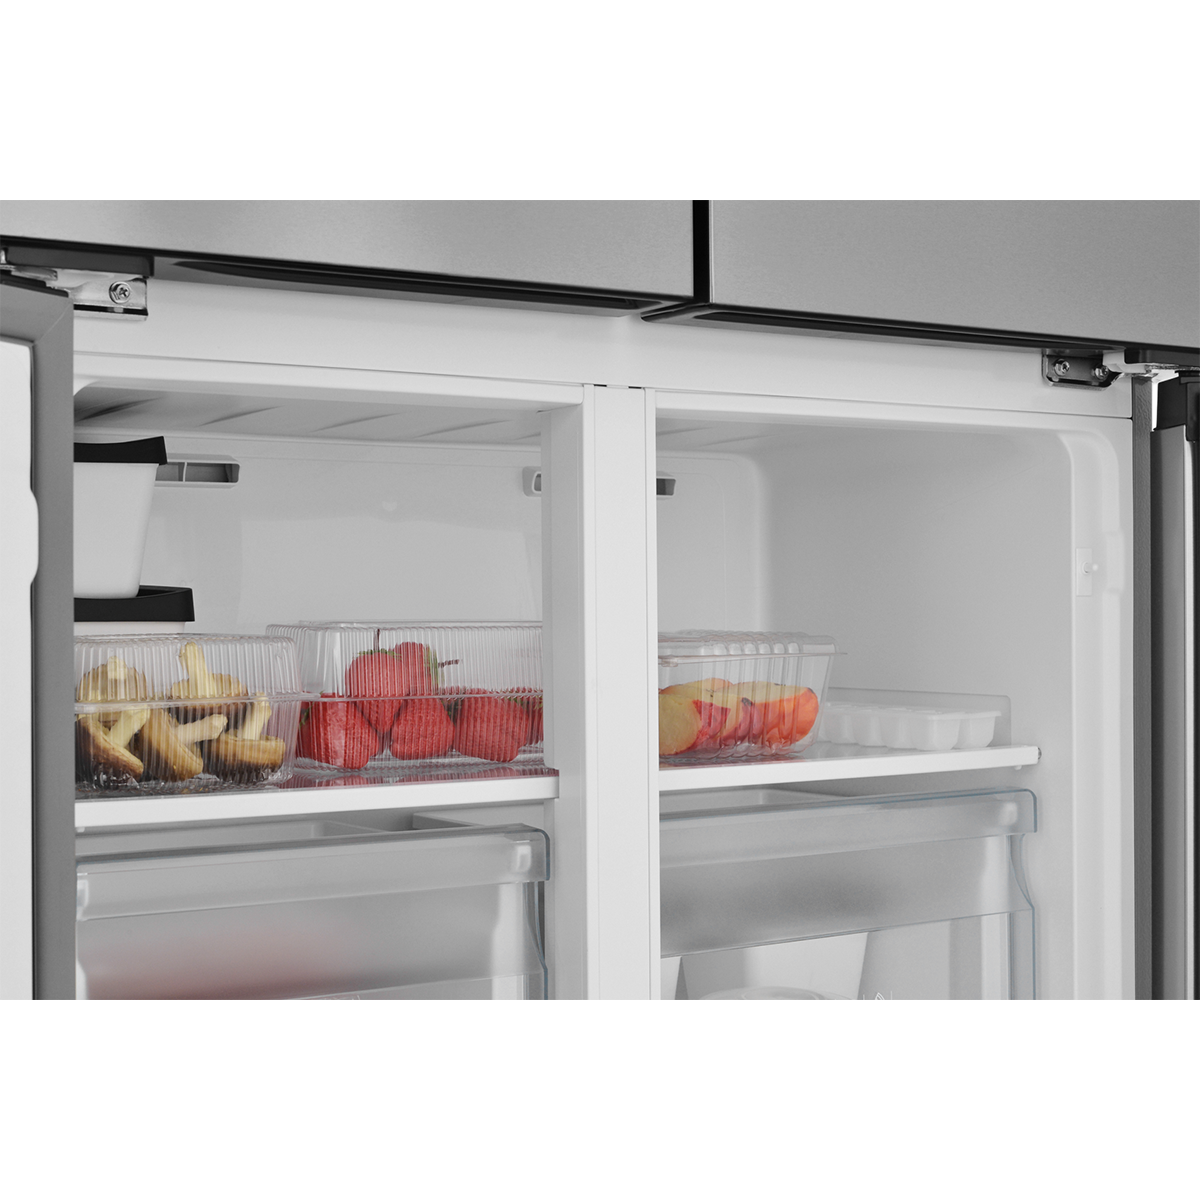 картинка Холодильник Cross Door ZUGEL ZRCD430X, нерж. сталь